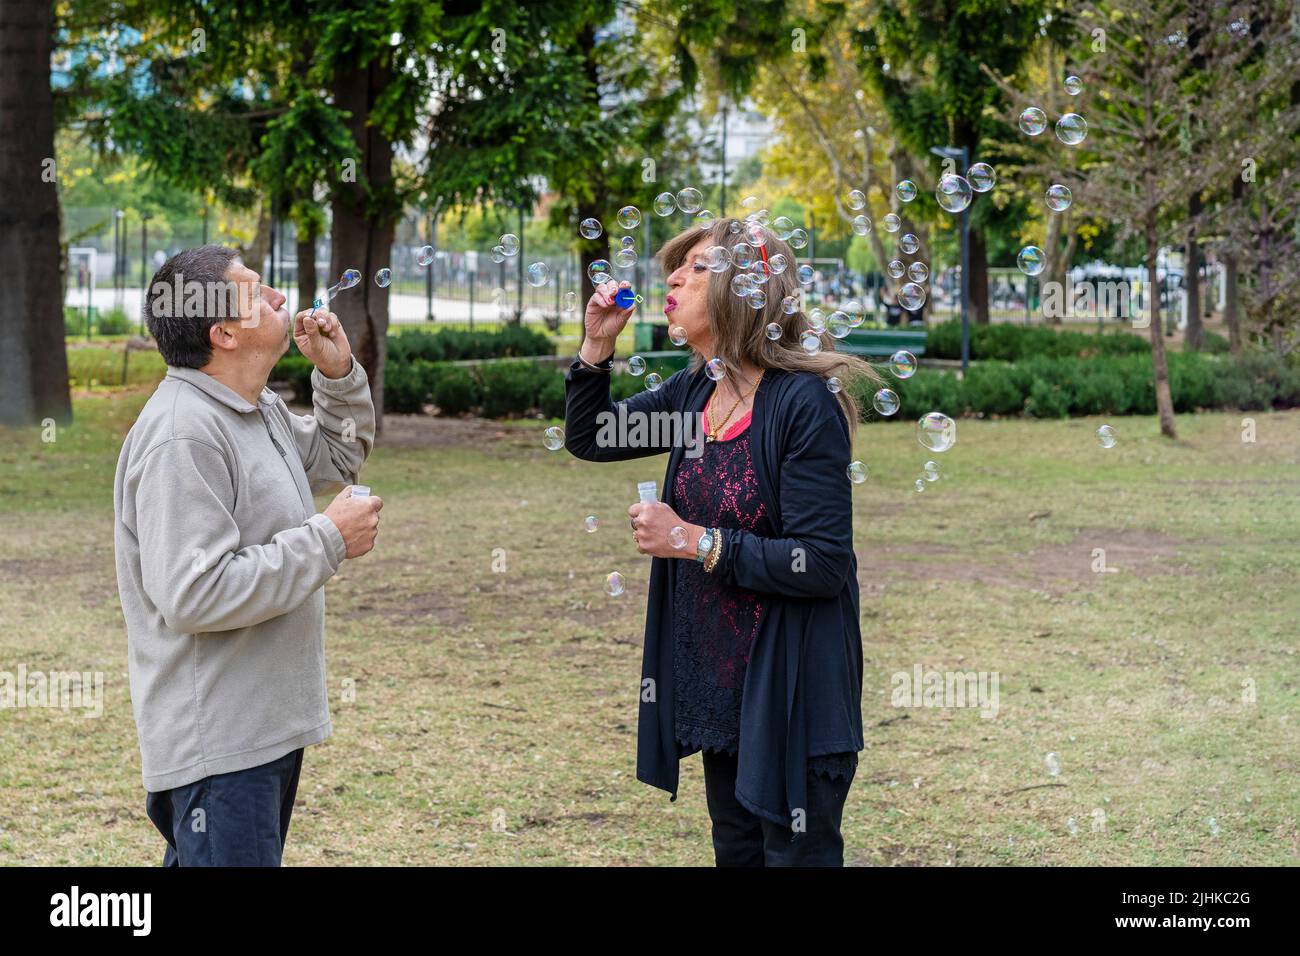 Alegre pareja de queer maduro soplando burbujas en un parque Foto de stock